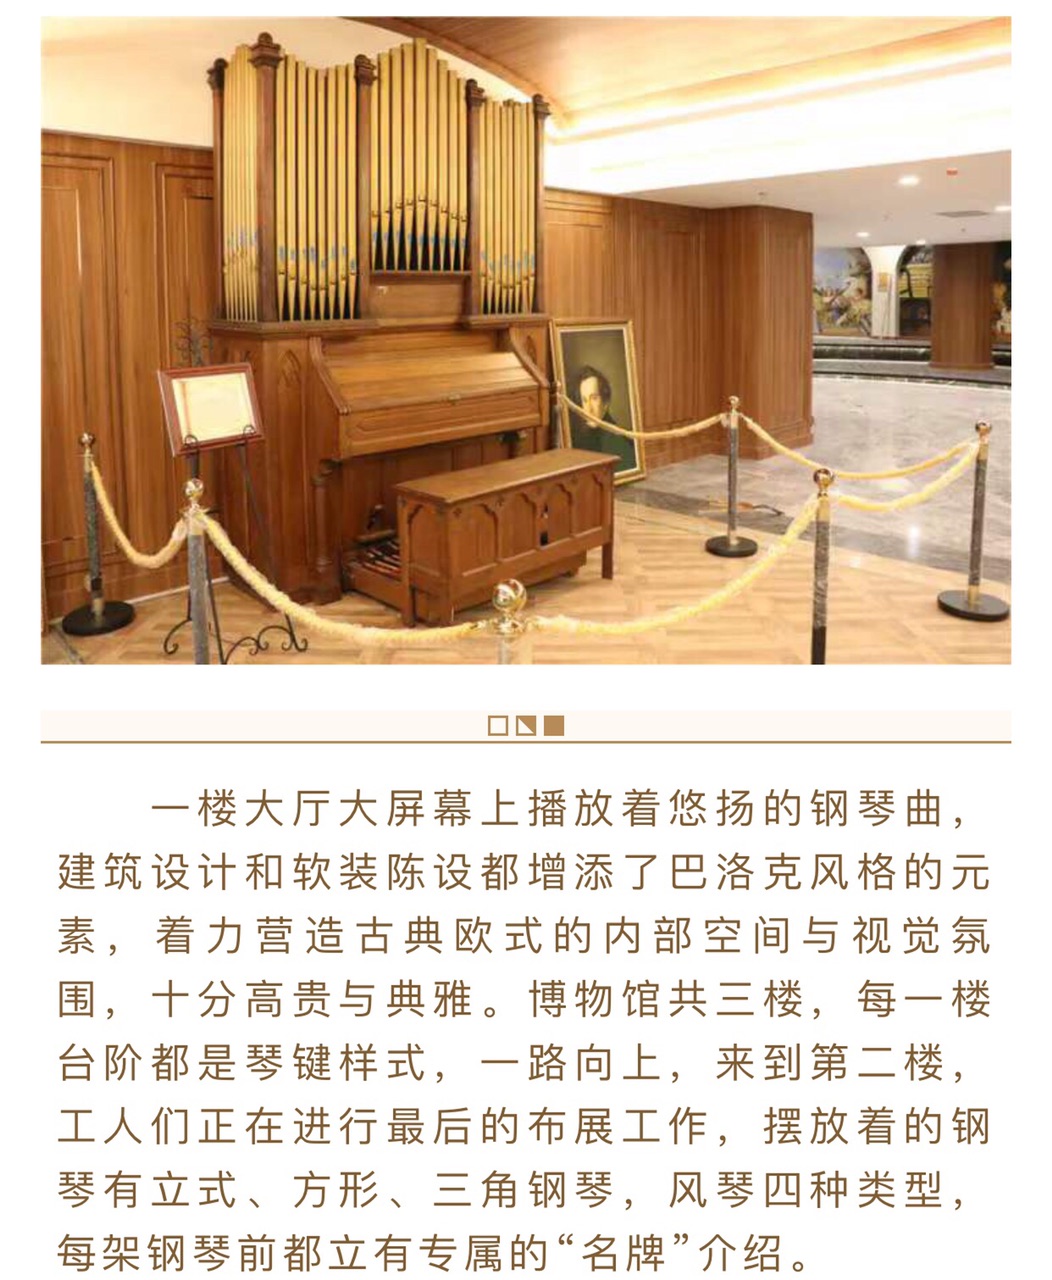 【转载】达州钢琴博物馆即将开馆!